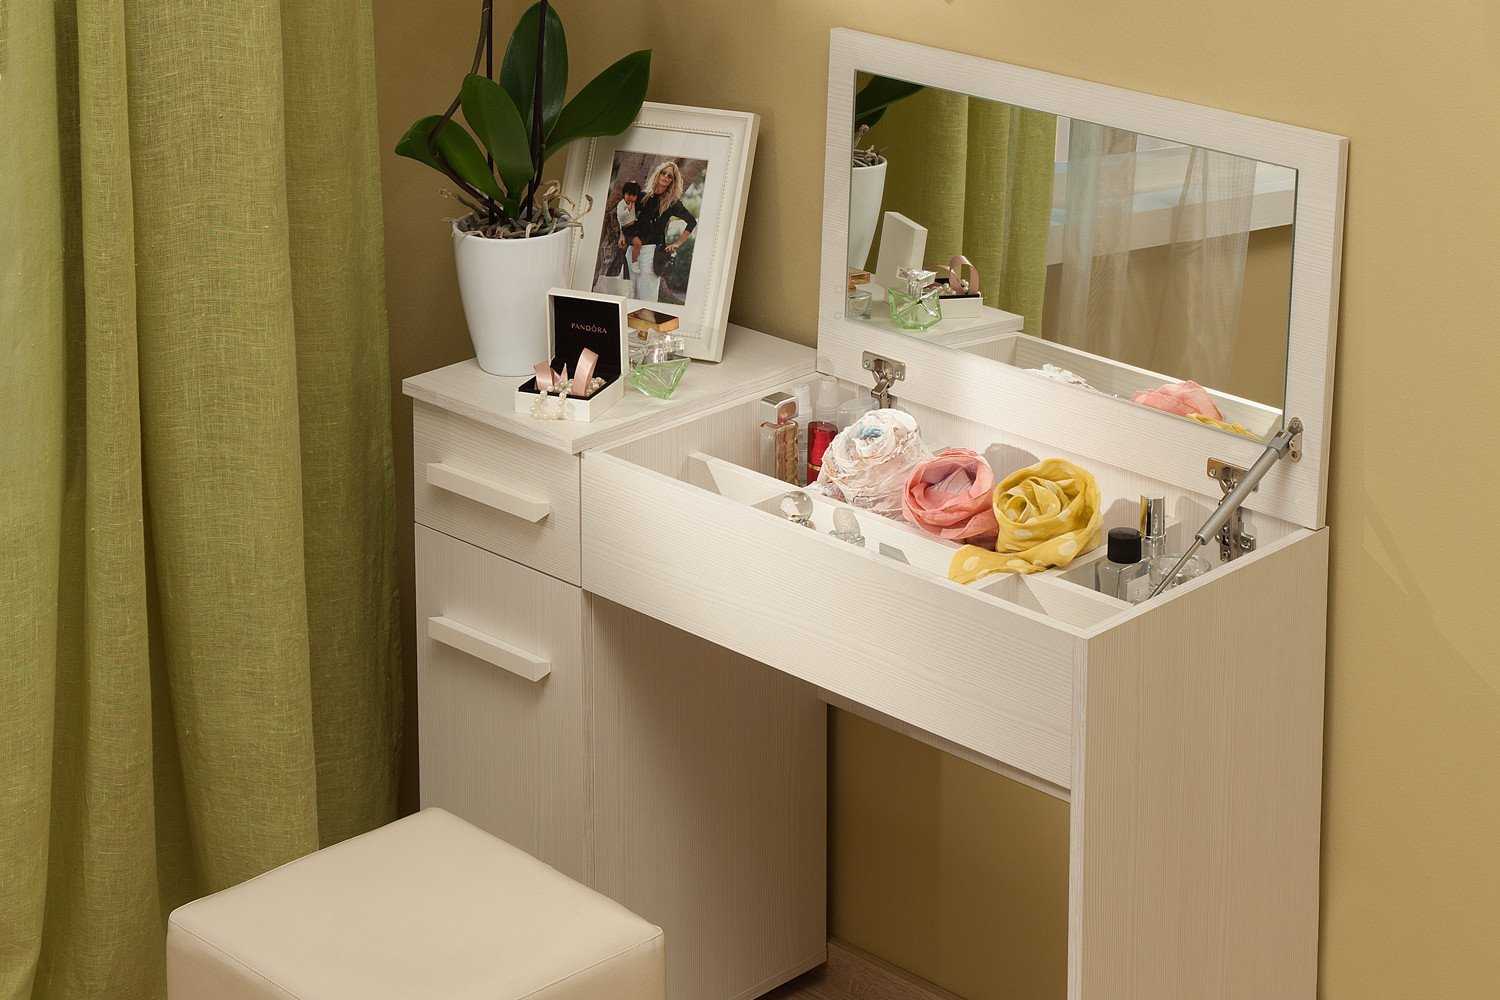 Туалетный столик для девочки с зеркалом (21 фото): для девочки-подростка и деревянный для малышек от 3 до 10 лет